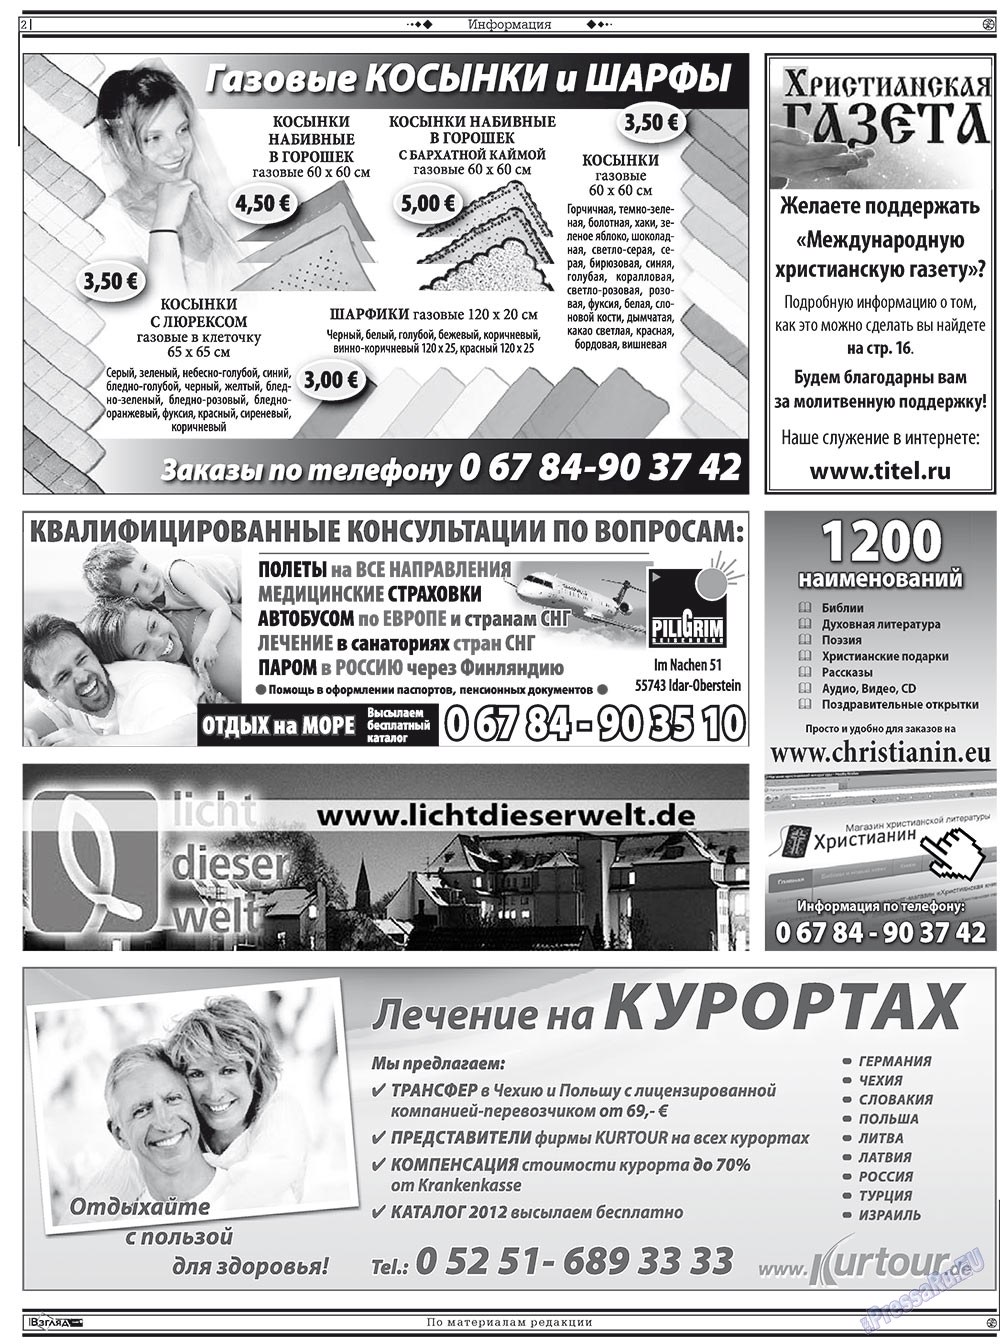 Христианская газета (газета). 2012 год, номер 3, стр. 16